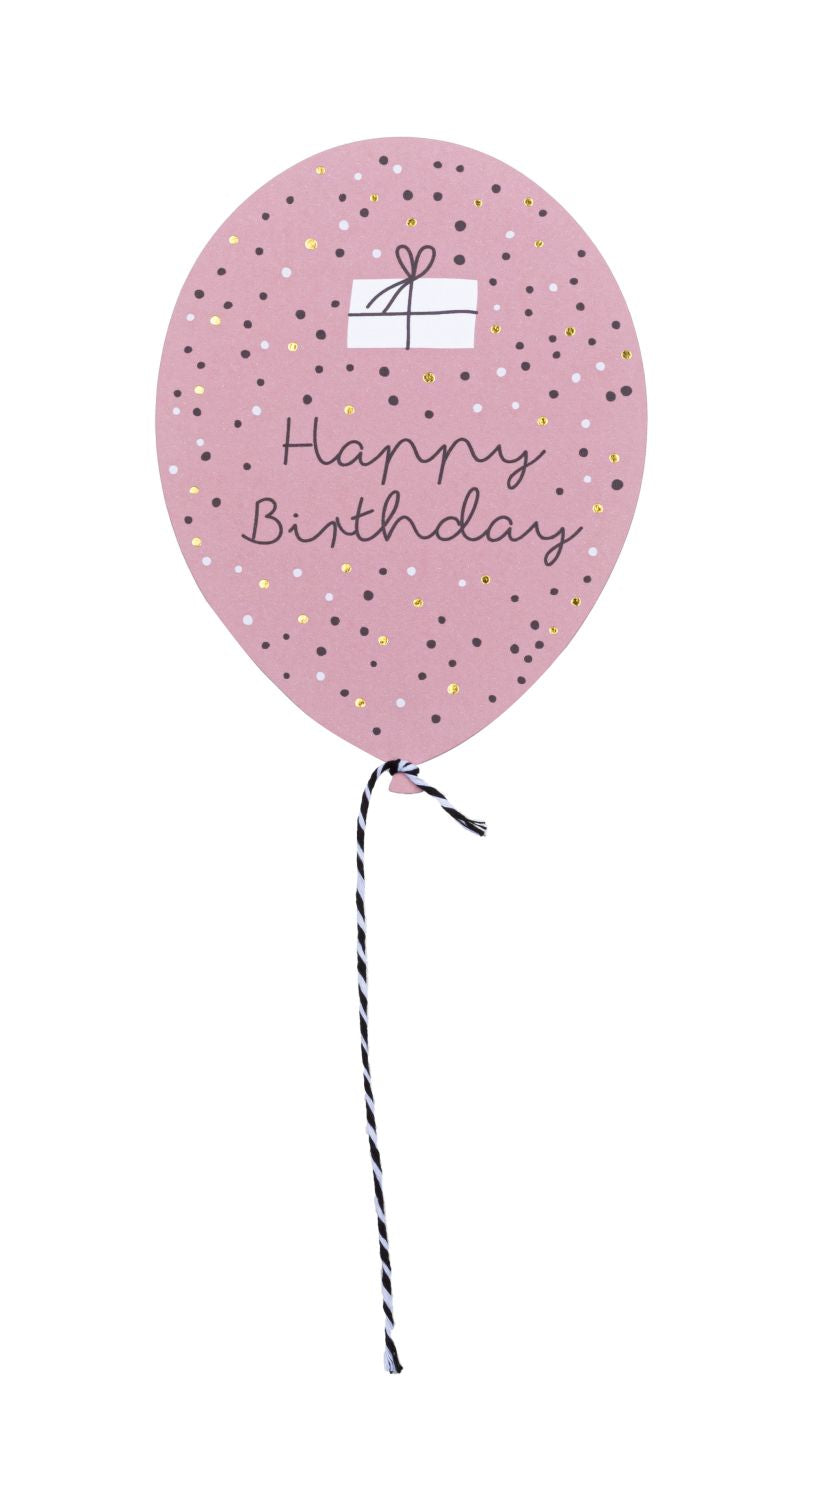 RAEDER DESIGN Wunschballonkarte Happy Birthday